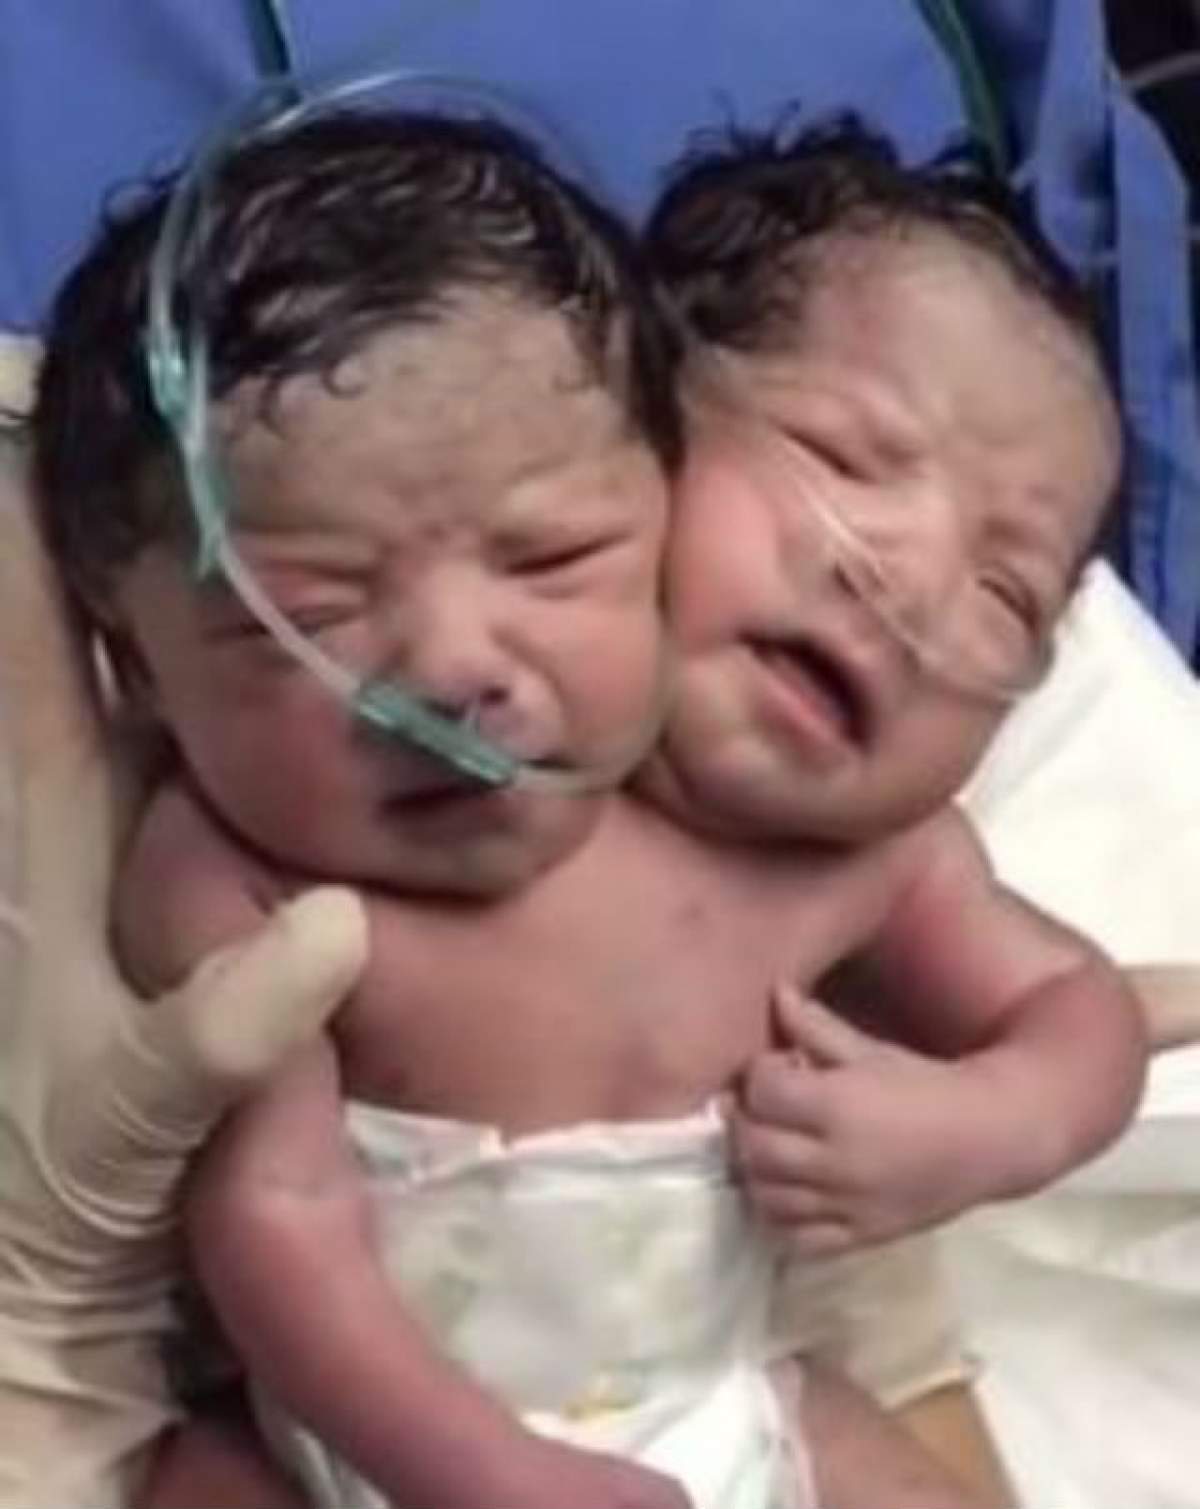 VIDEO / Un bebeluş s-a născut cu două capete! Imaginile sunt terifiante